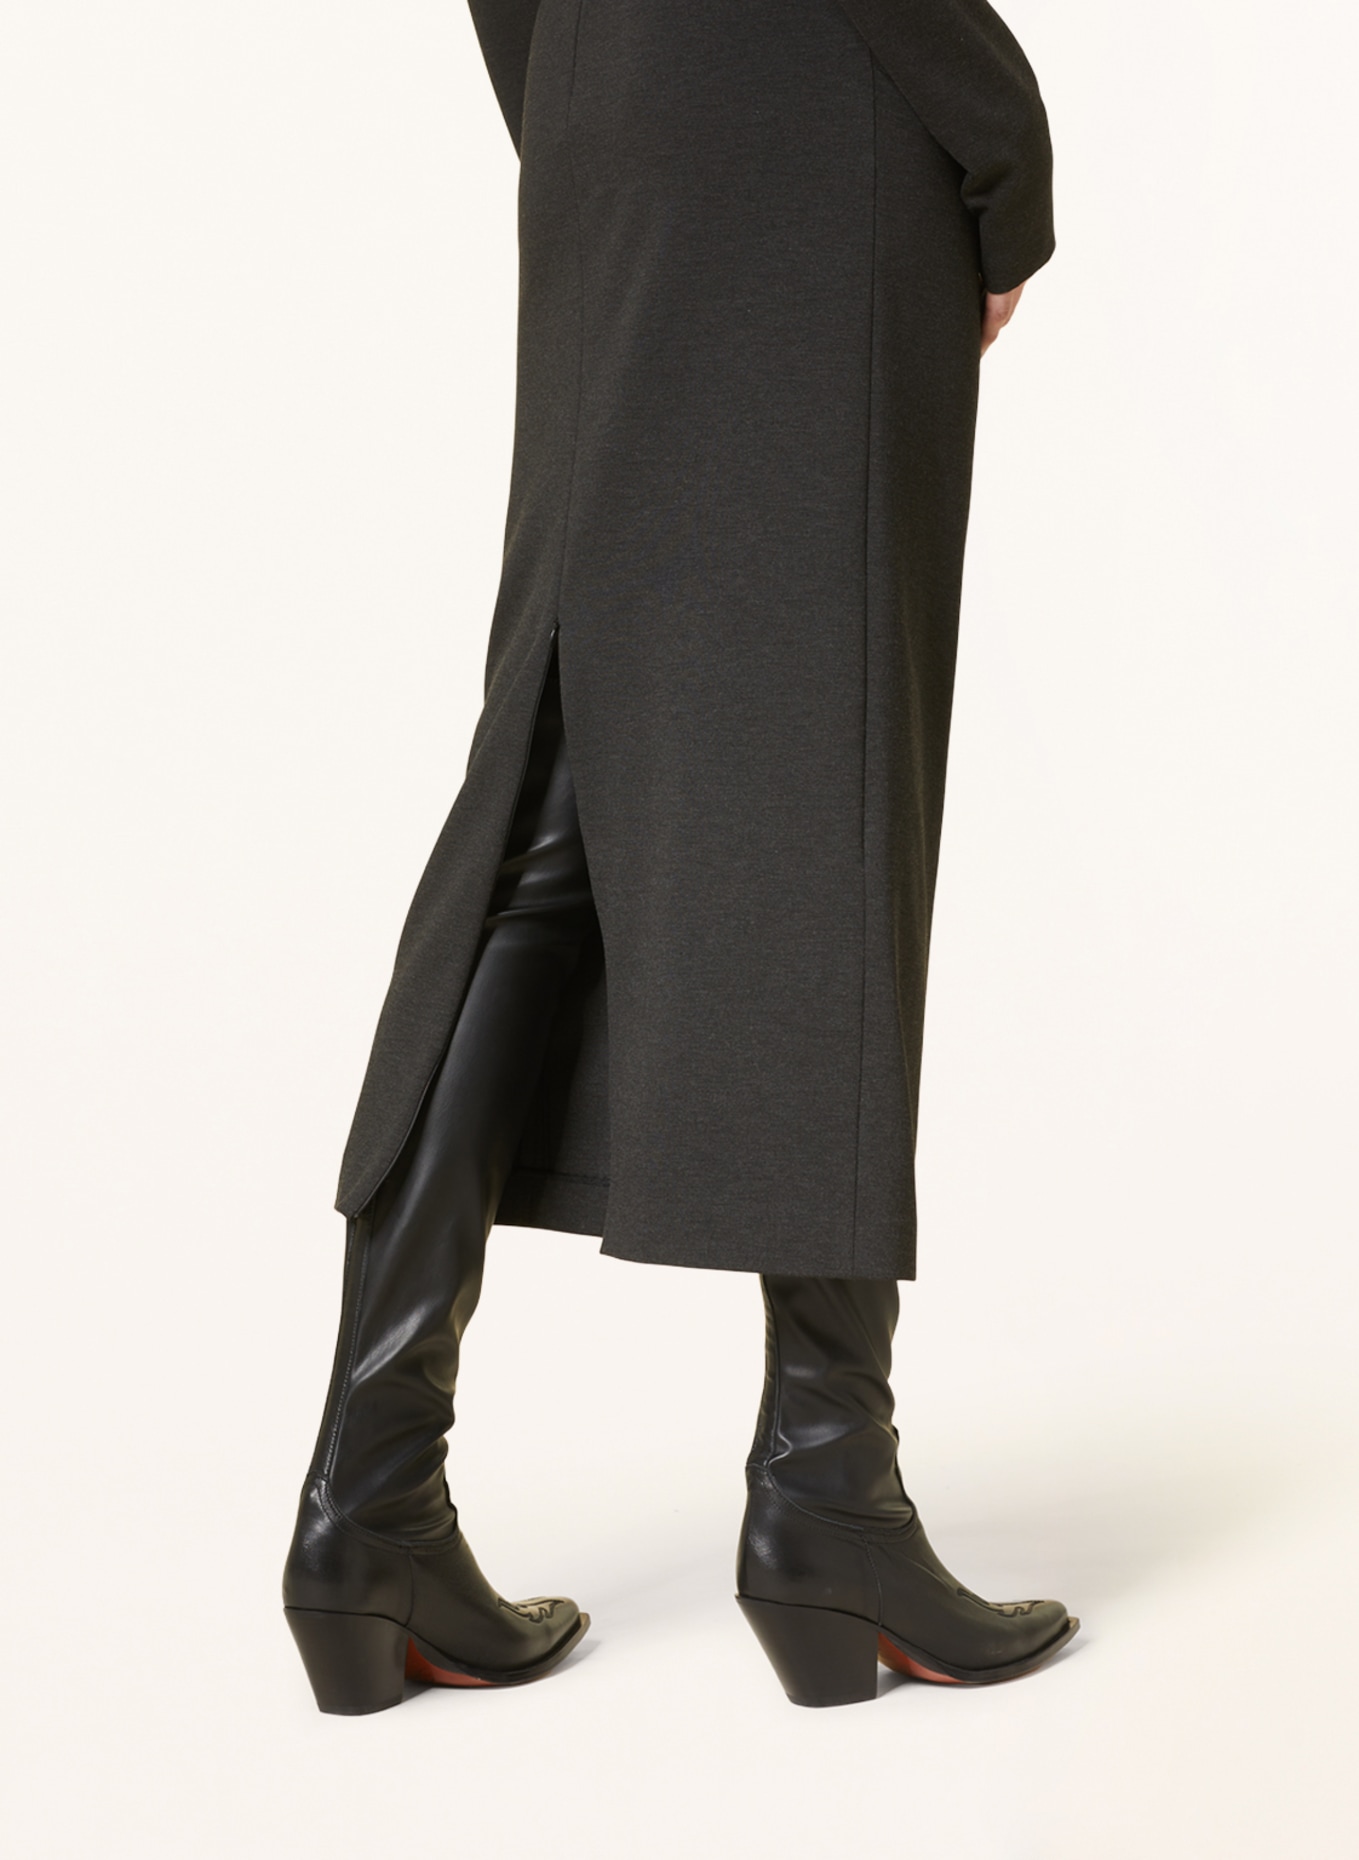 DOROTHEE SCHUMACHER Jersey dress, Color: DARK GRAY (Image 4)